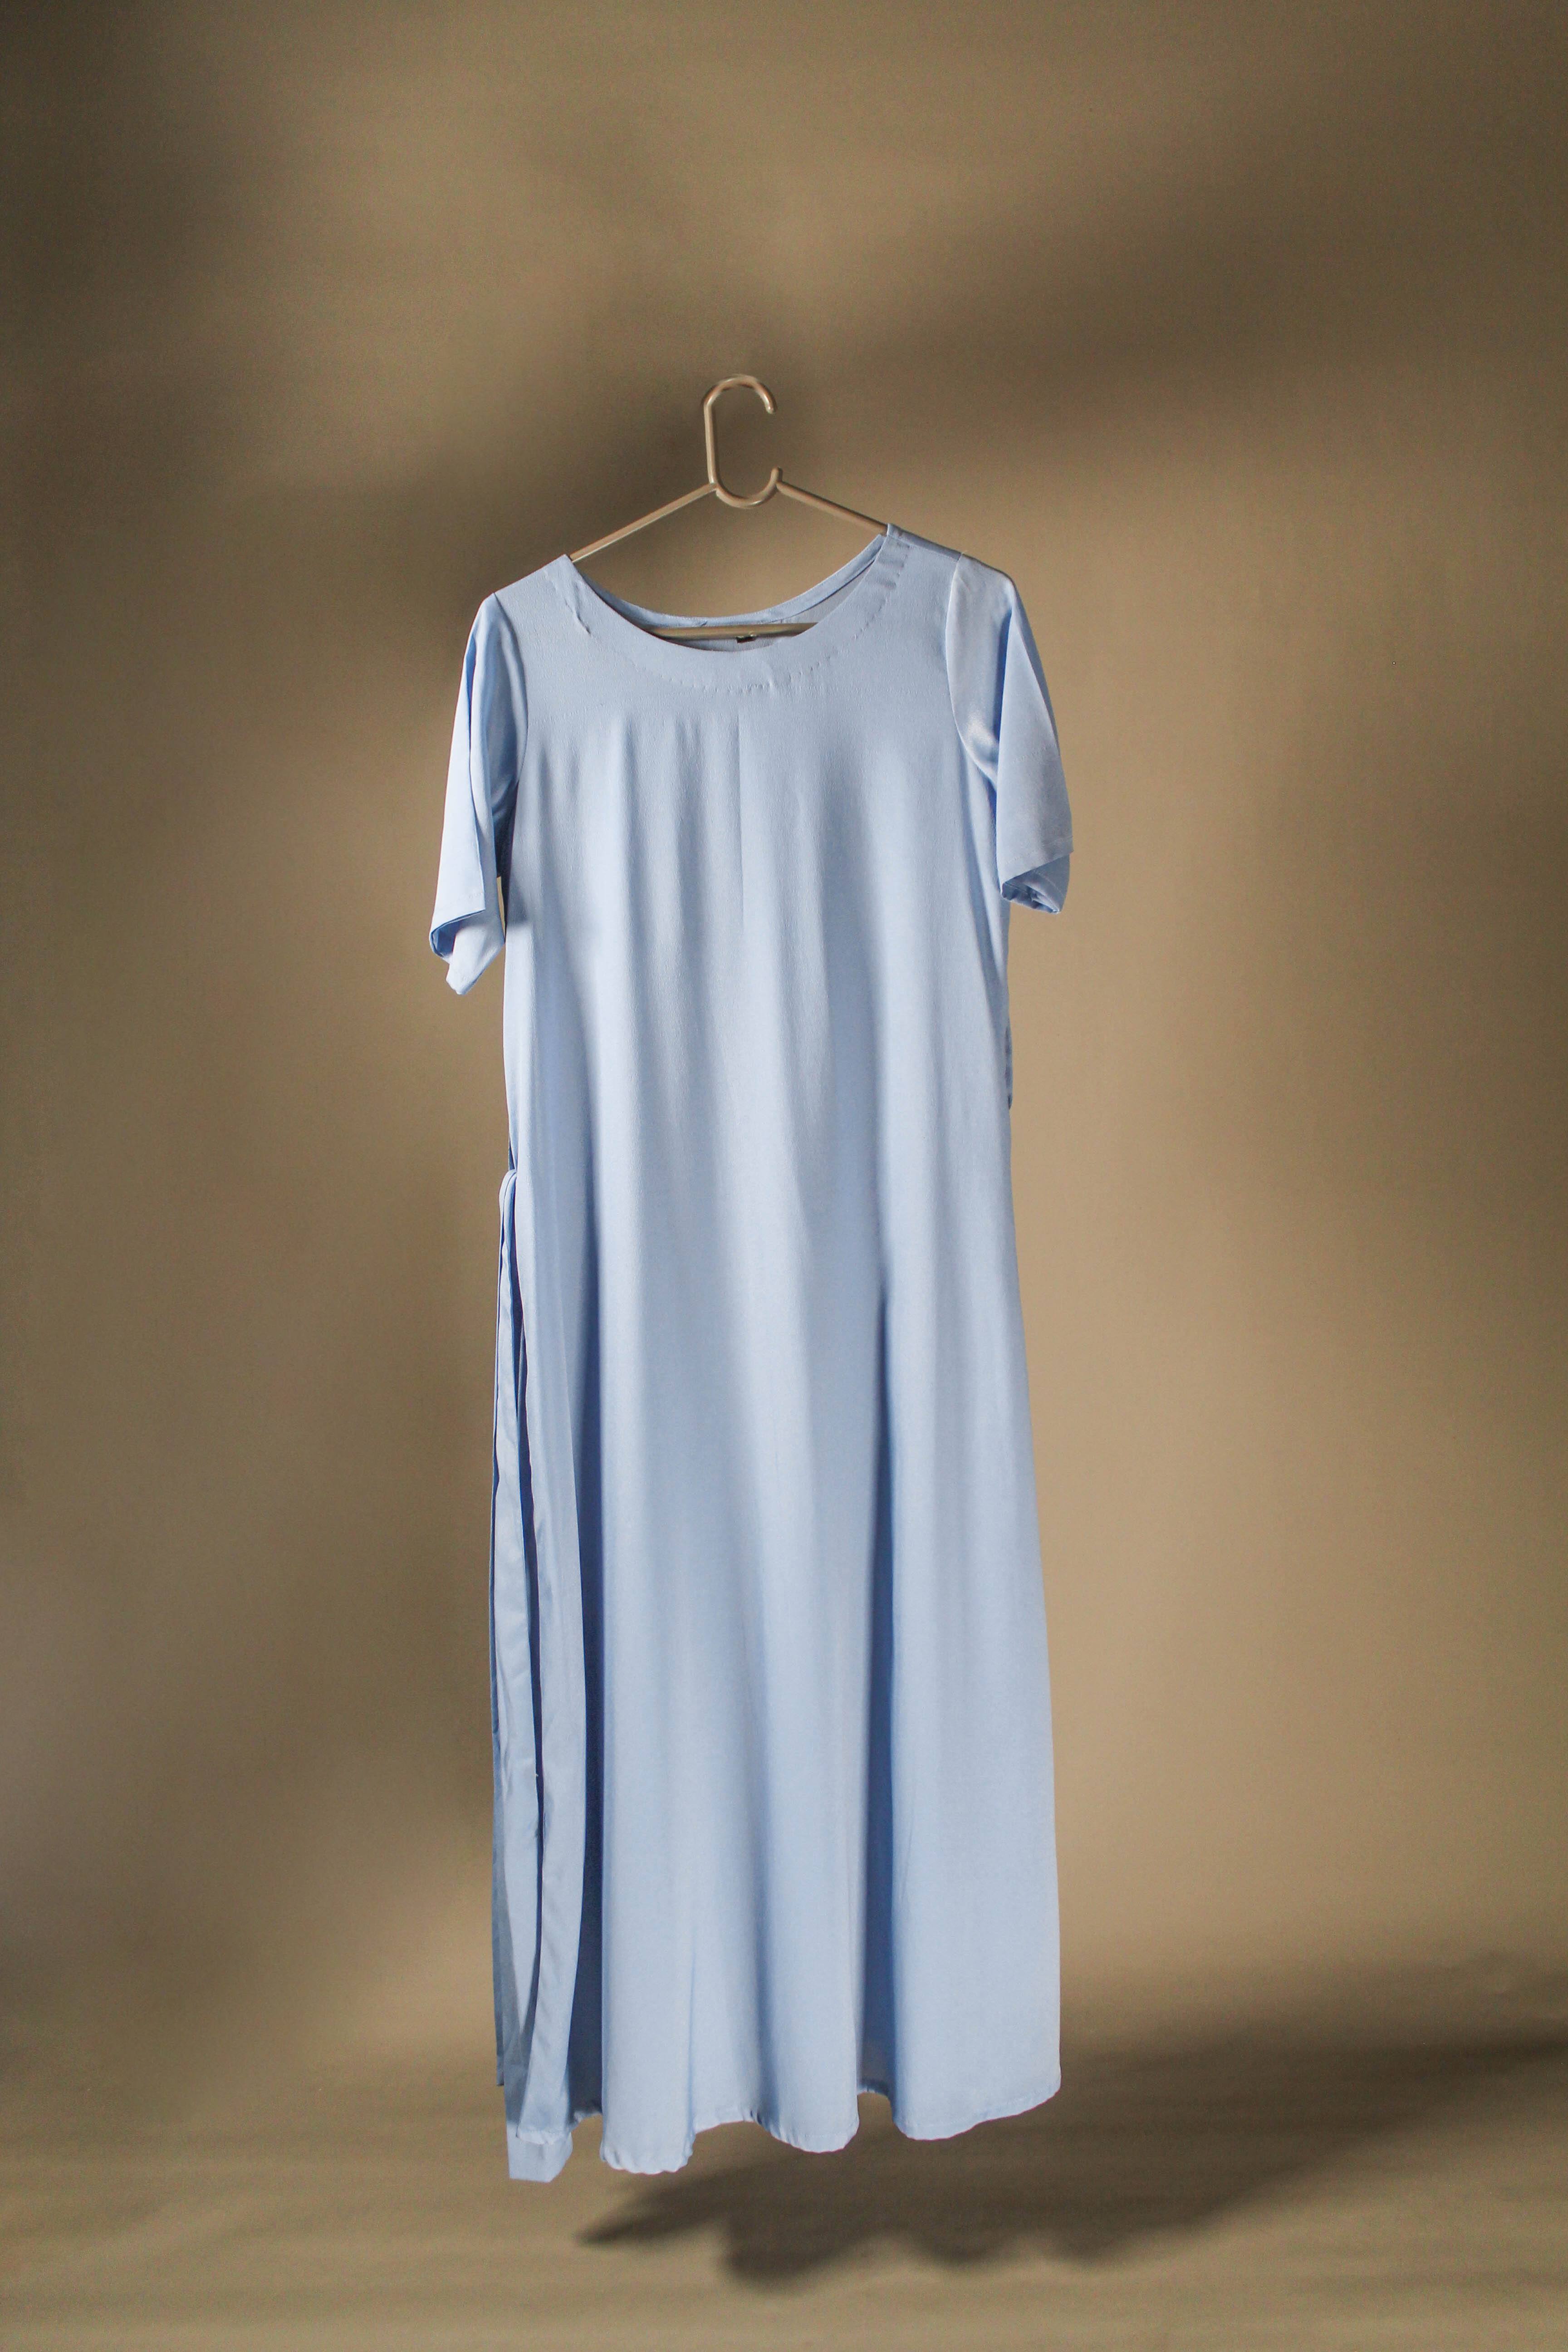 Ethereal Charm: Baby Blue Non-Wrinkle Inner Slip Dress